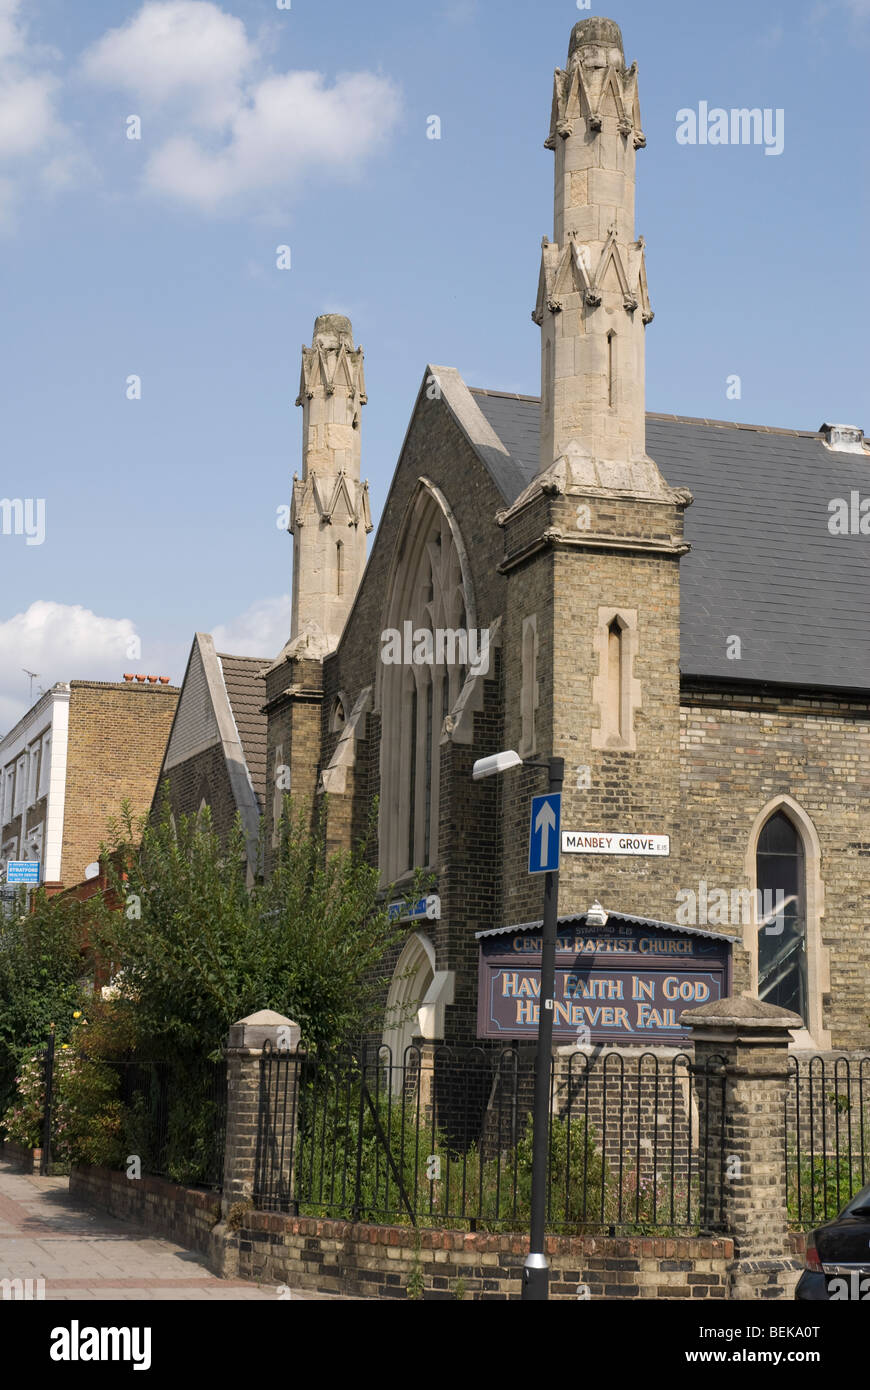 Iglesia bautista central fotografías e imágenes de alta resolución - Alamy